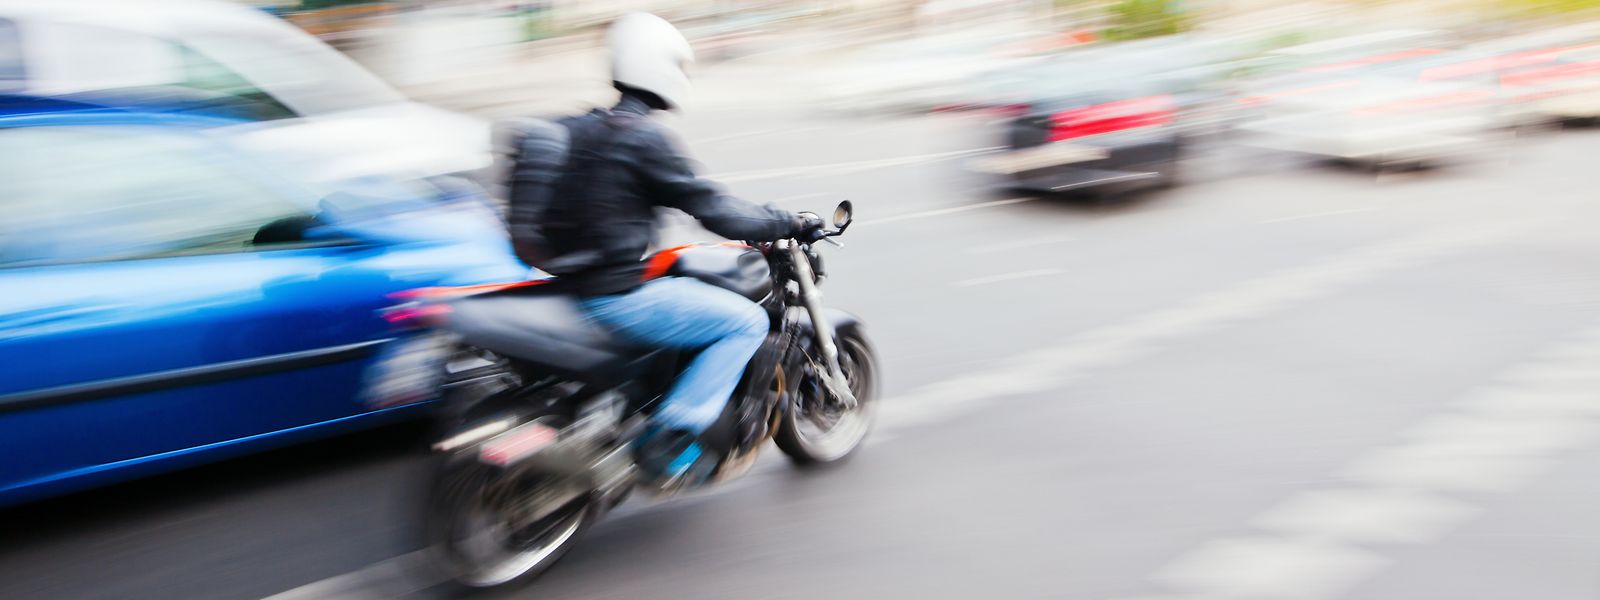 Les motos et scooters sont principalement visés, mais le dispositif pourrait s'étendre aussi aux véhicules.